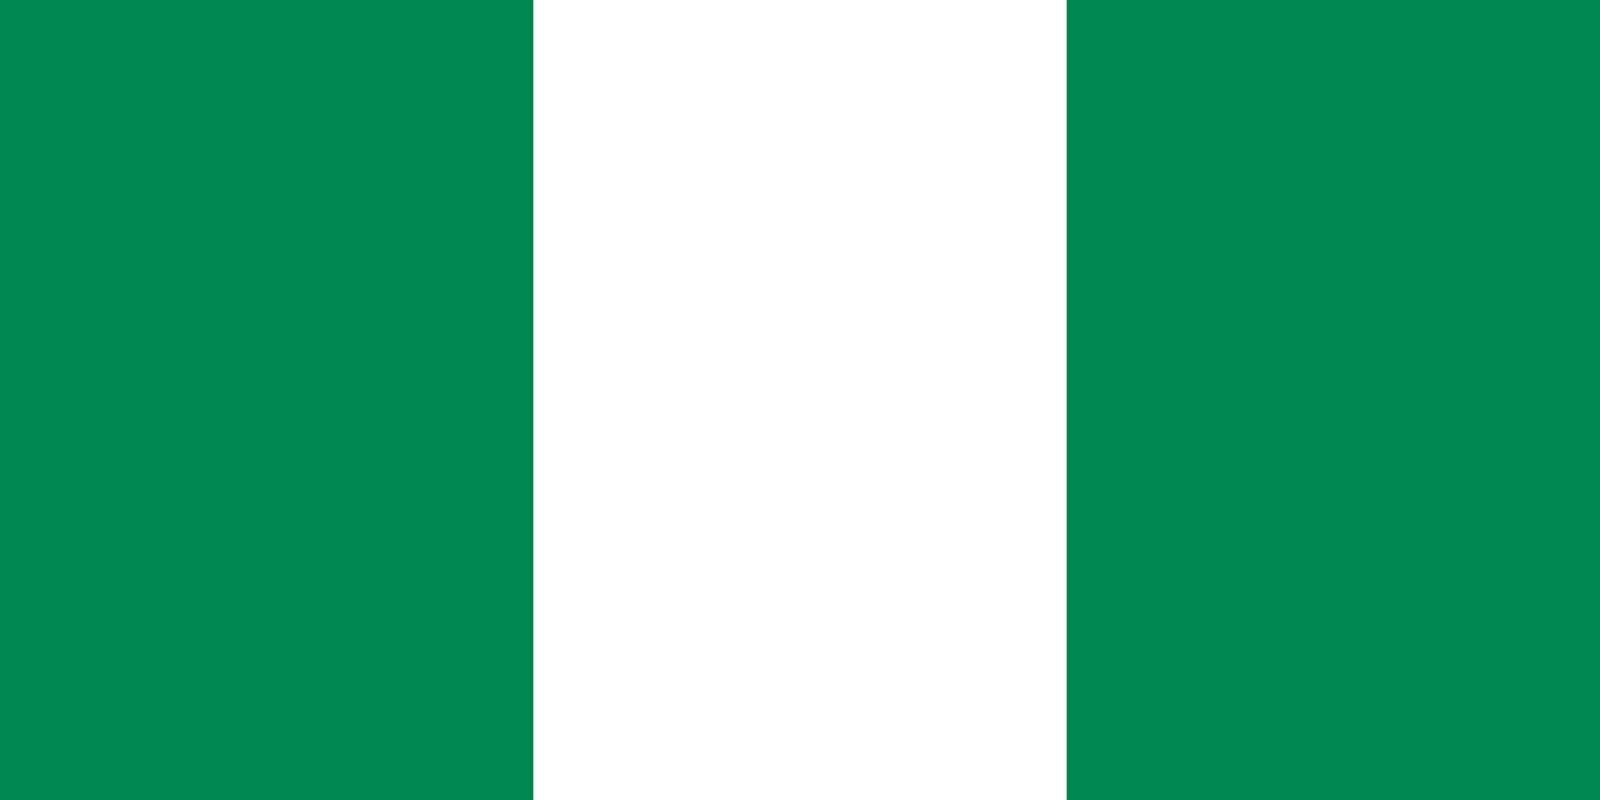 Bild der Staatsflagge Nigeria - mit einer Auflösung von 1600x800 - Afrika